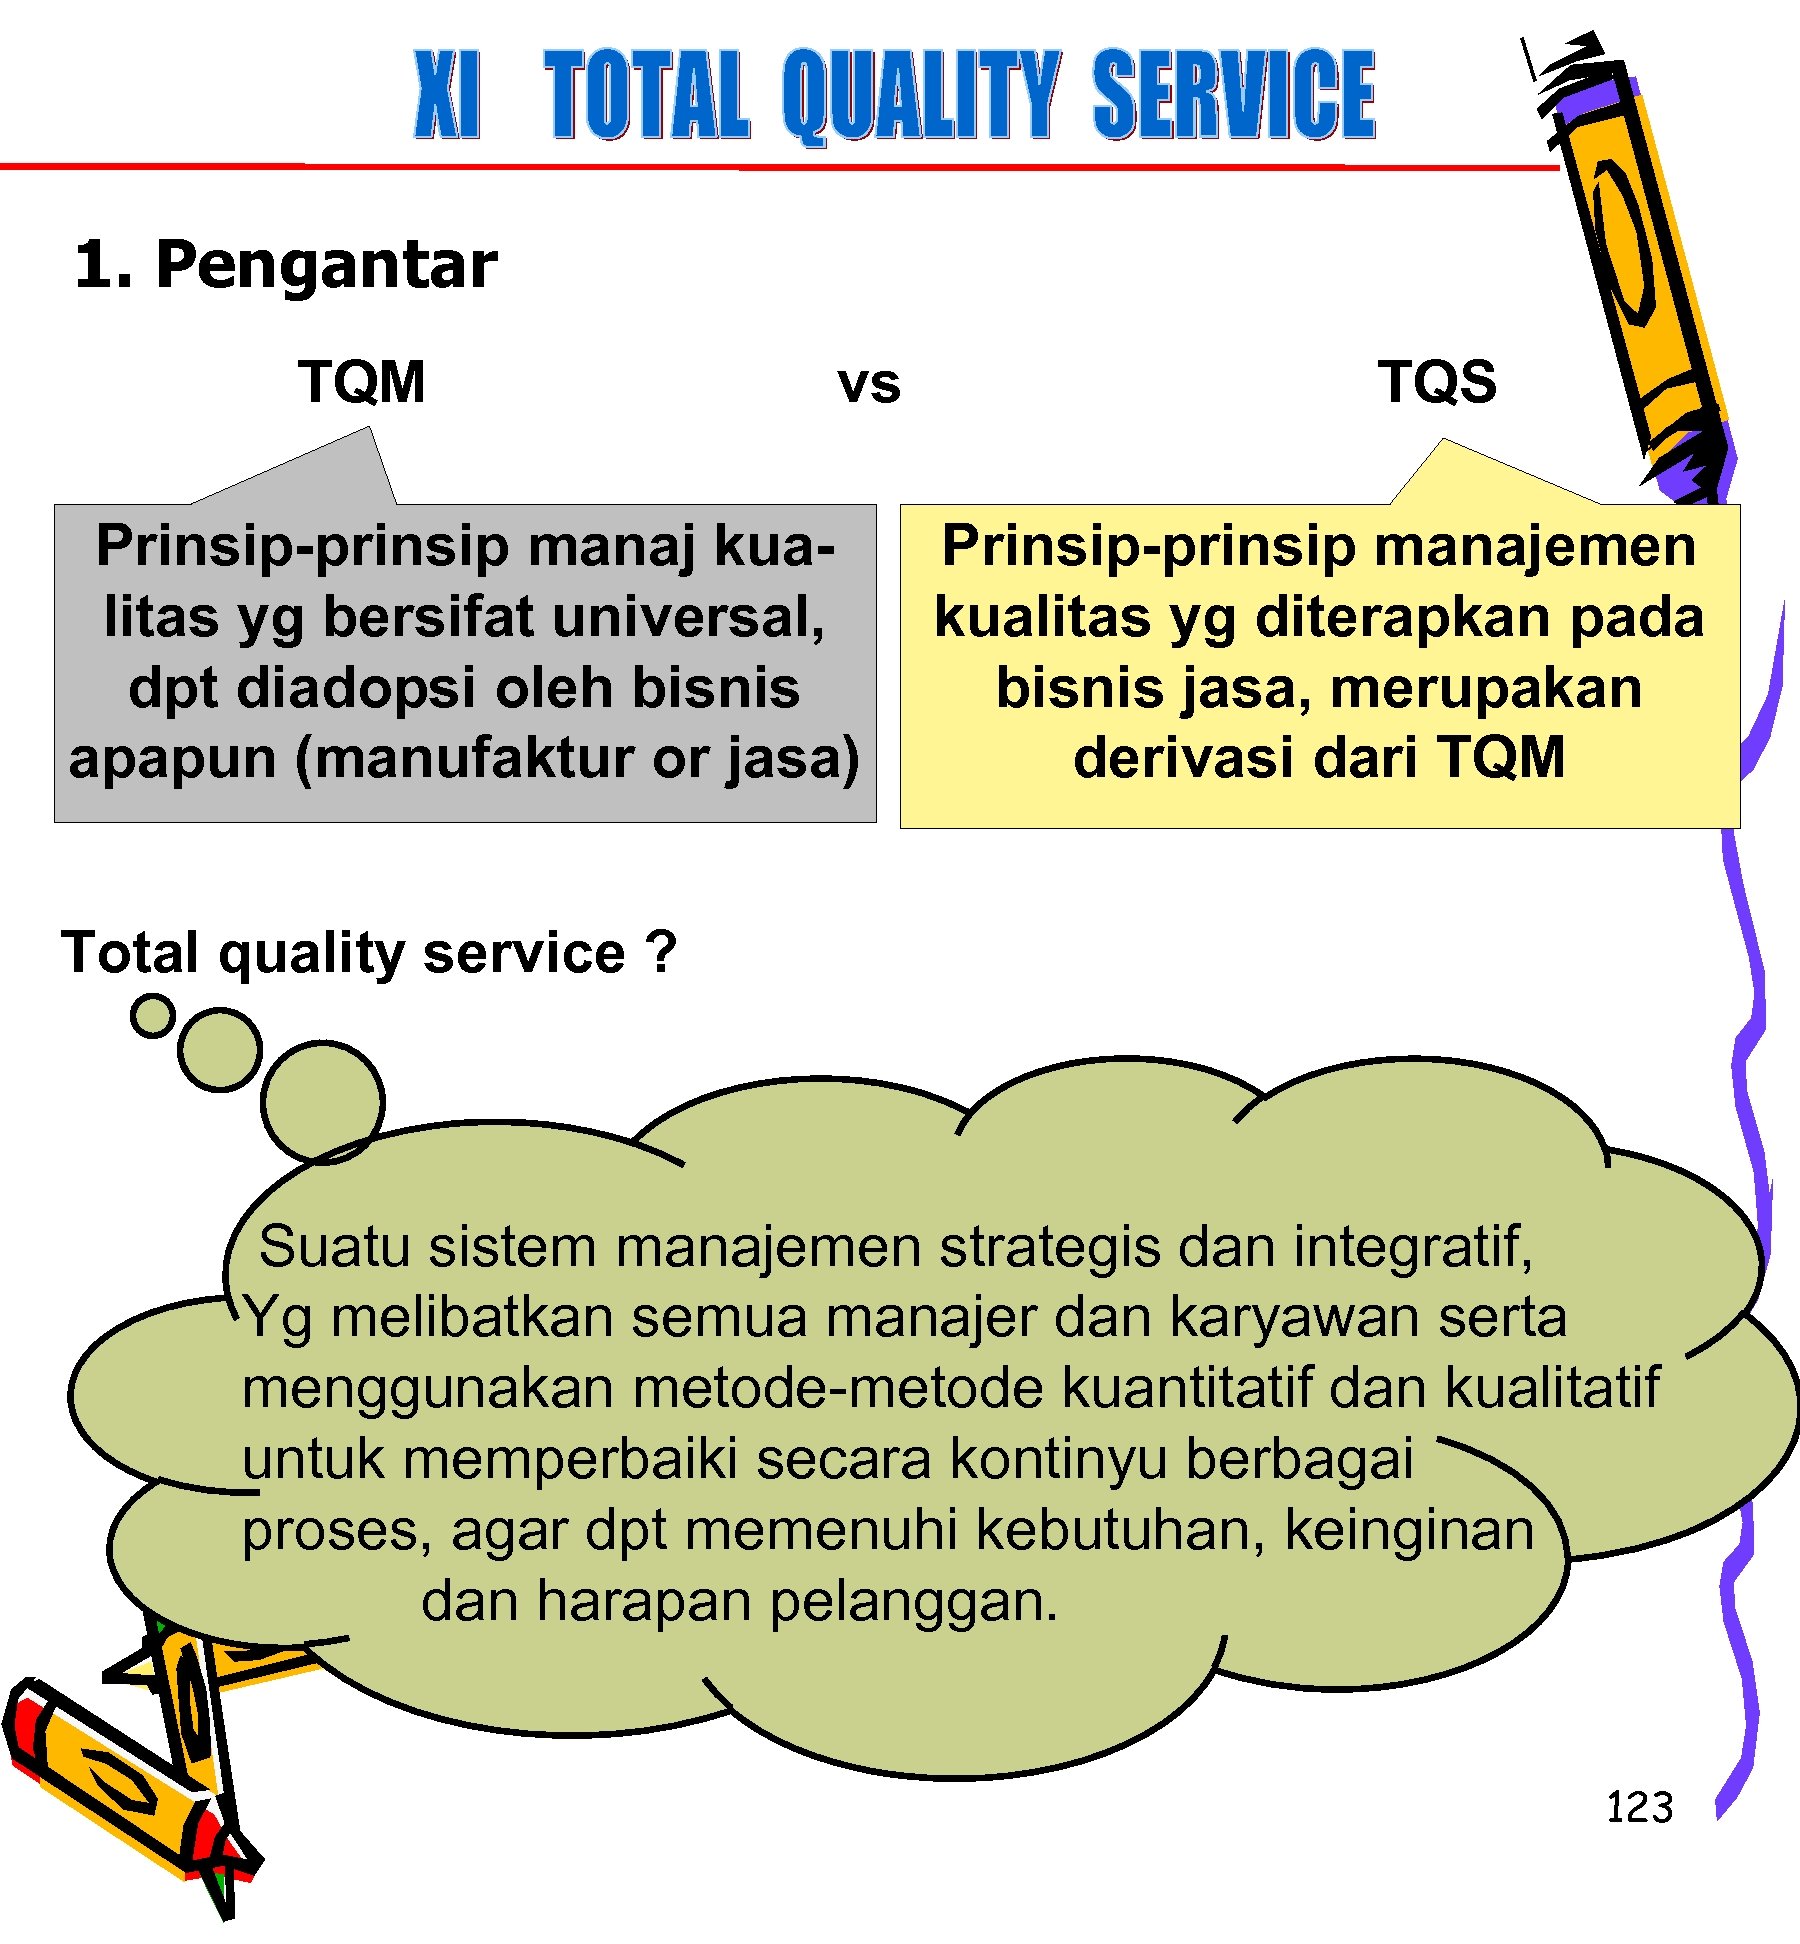 1. Pengantar TQM vs Prinsip-prinsip manaj kualitas yg bersifat universal, dpt diadopsi oleh bisnis